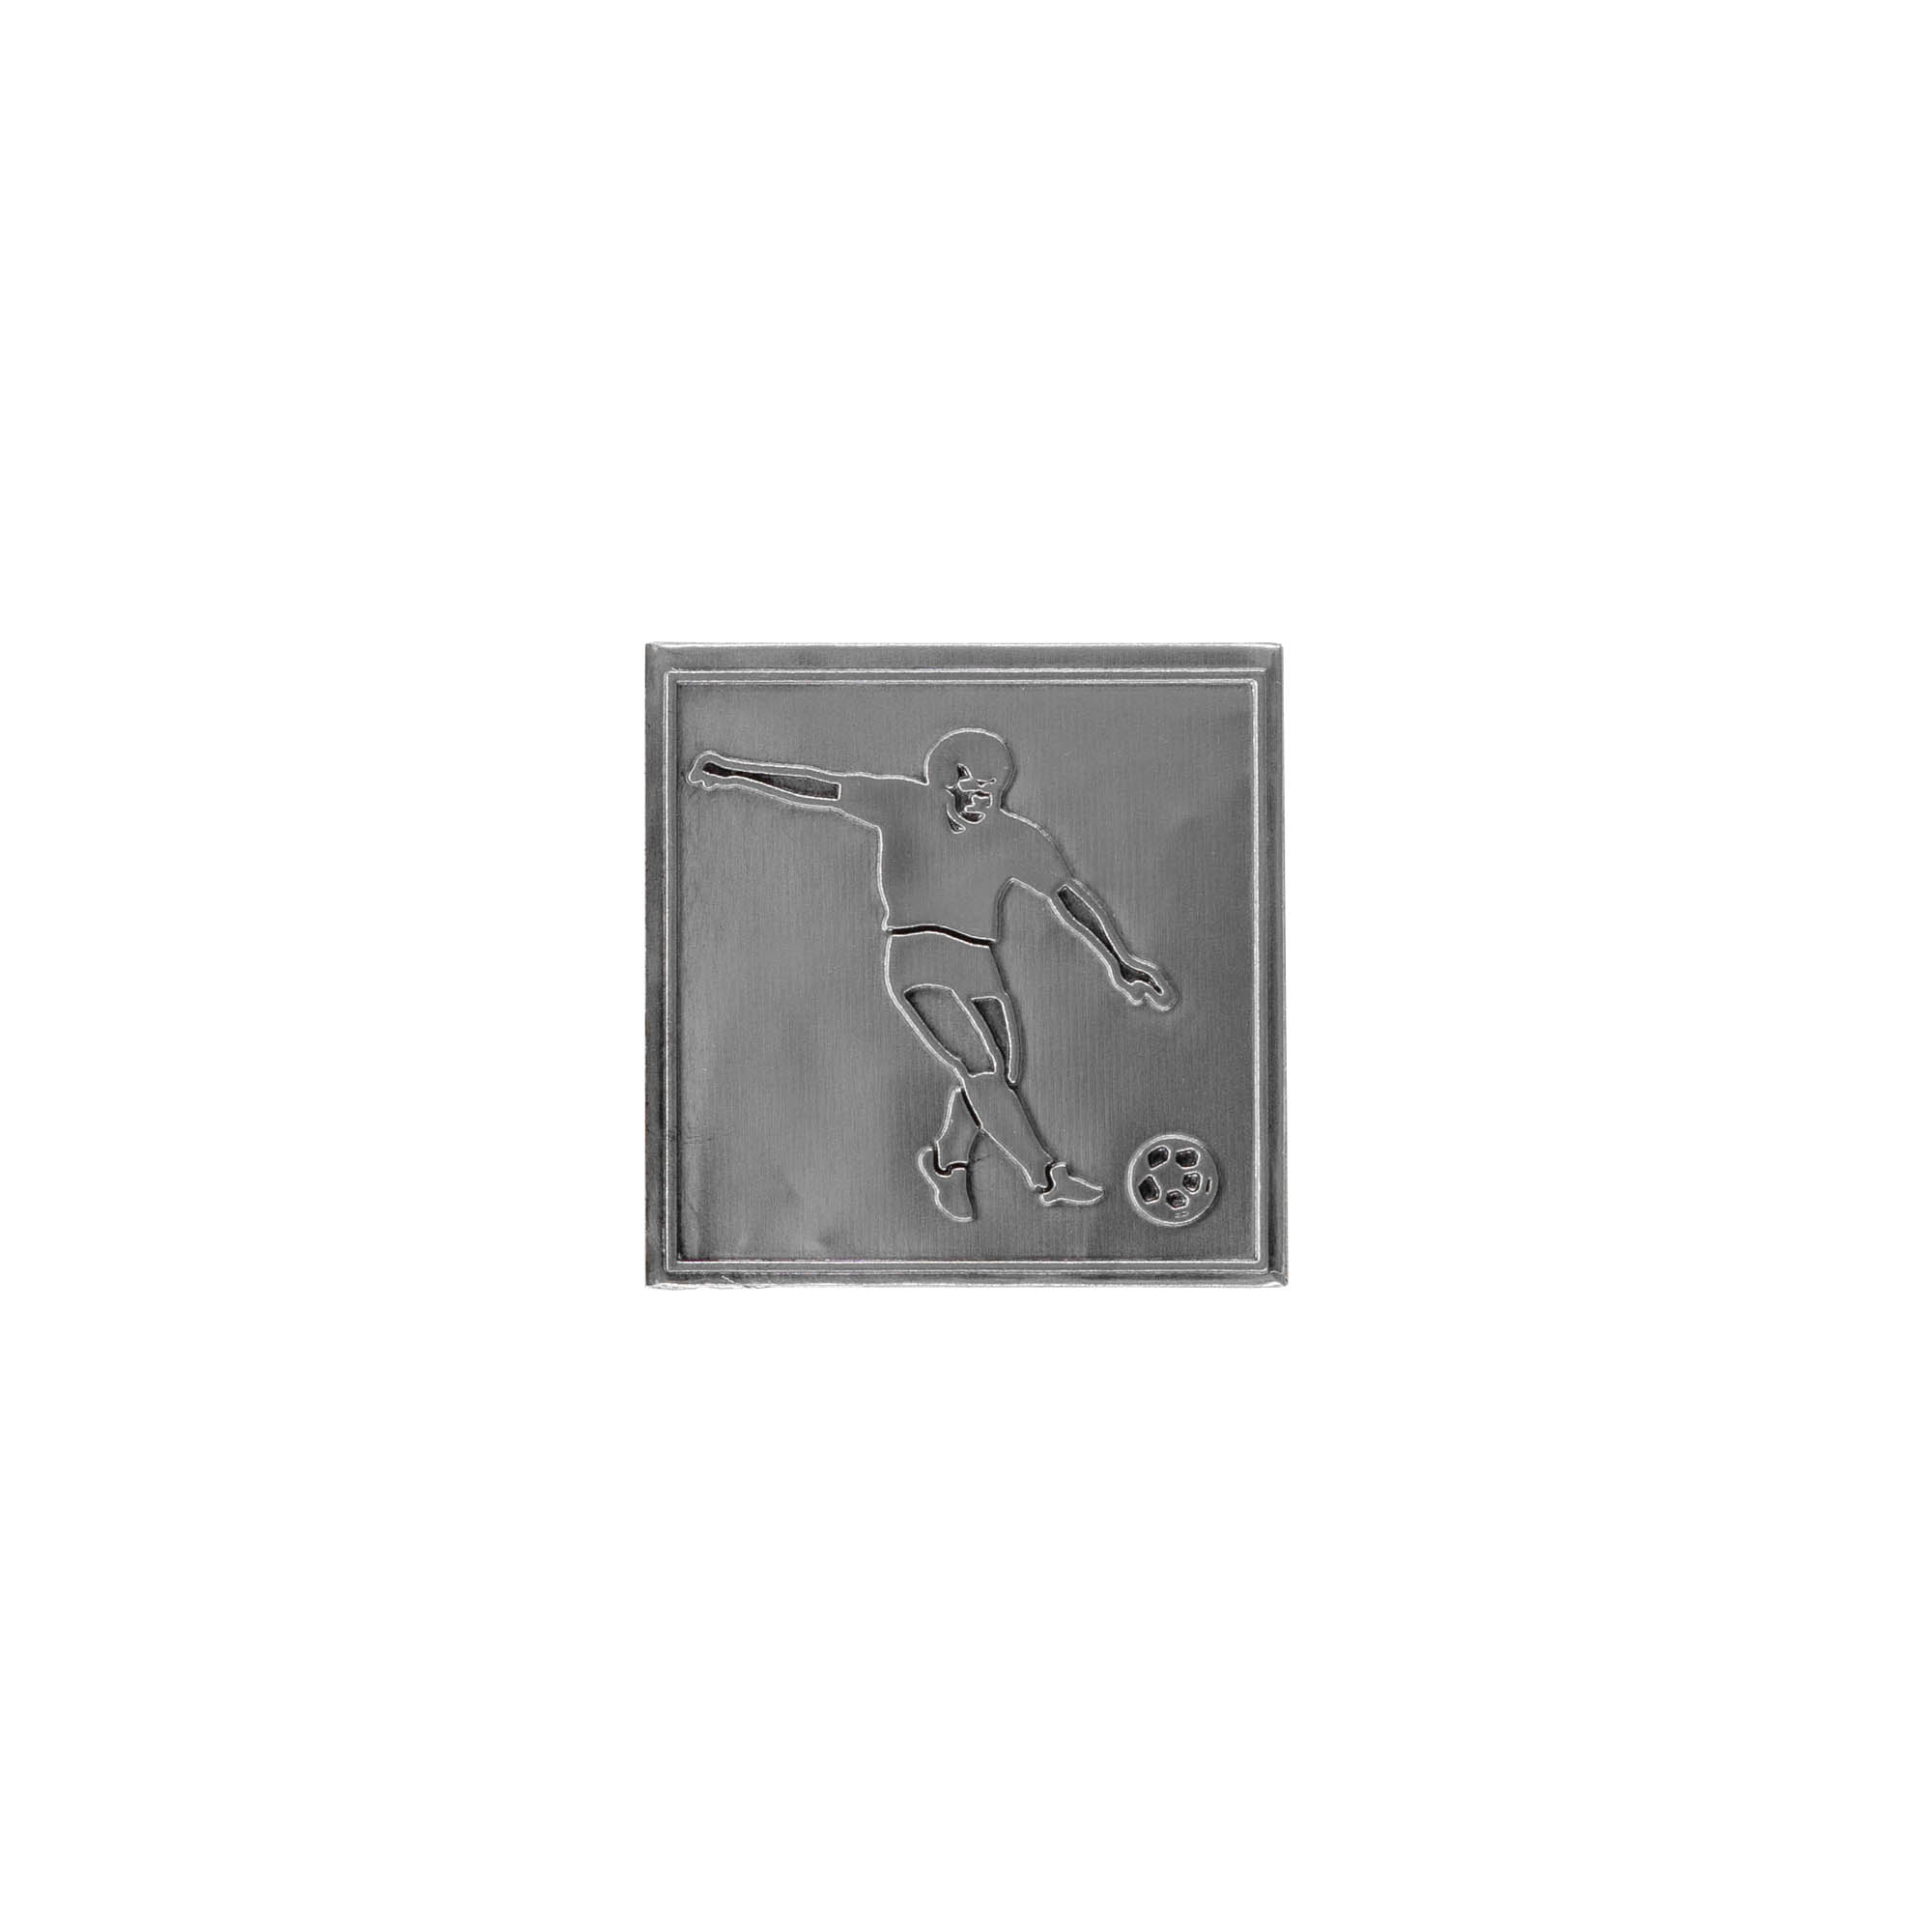 Etykieta cynowa 'Piłka nożna', kwadratowa, metal, kolor srebrny